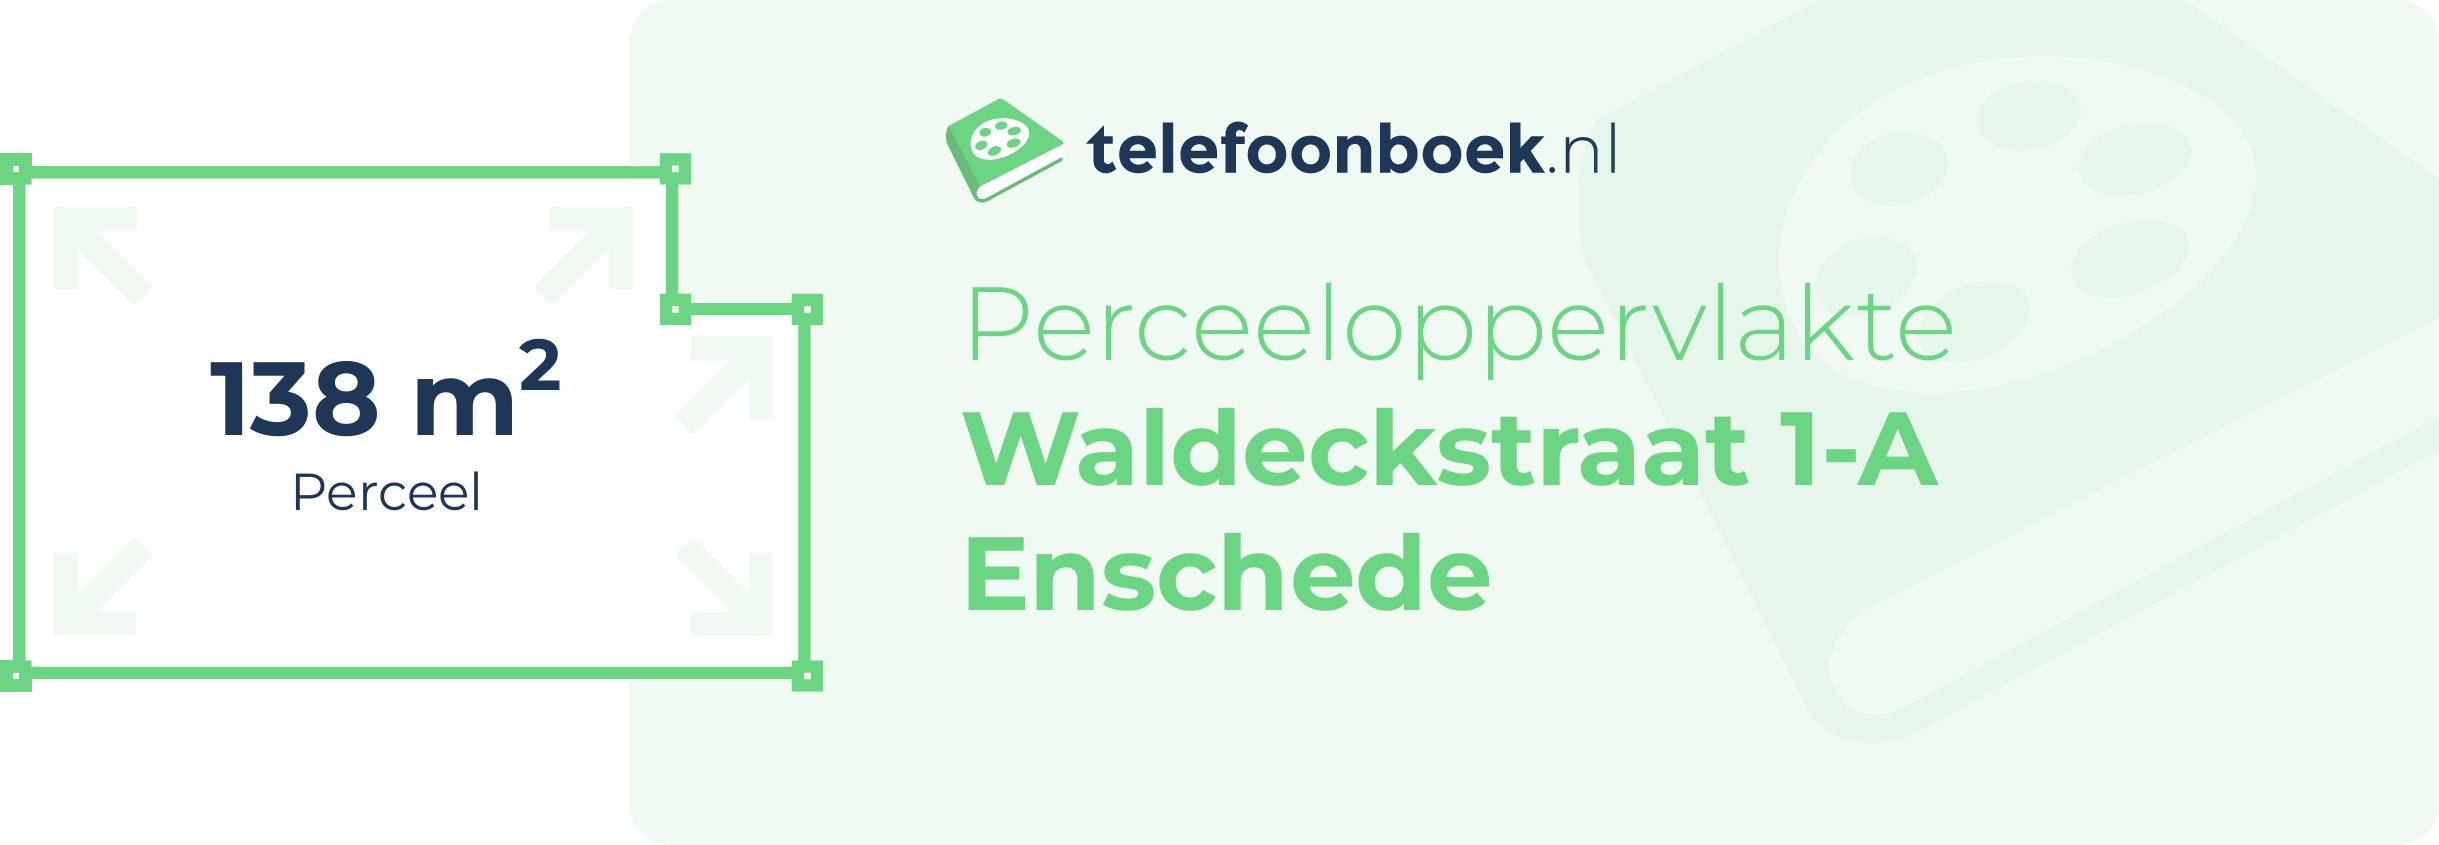 Perceeloppervlakte Waldeckstraat 1-A Enschede